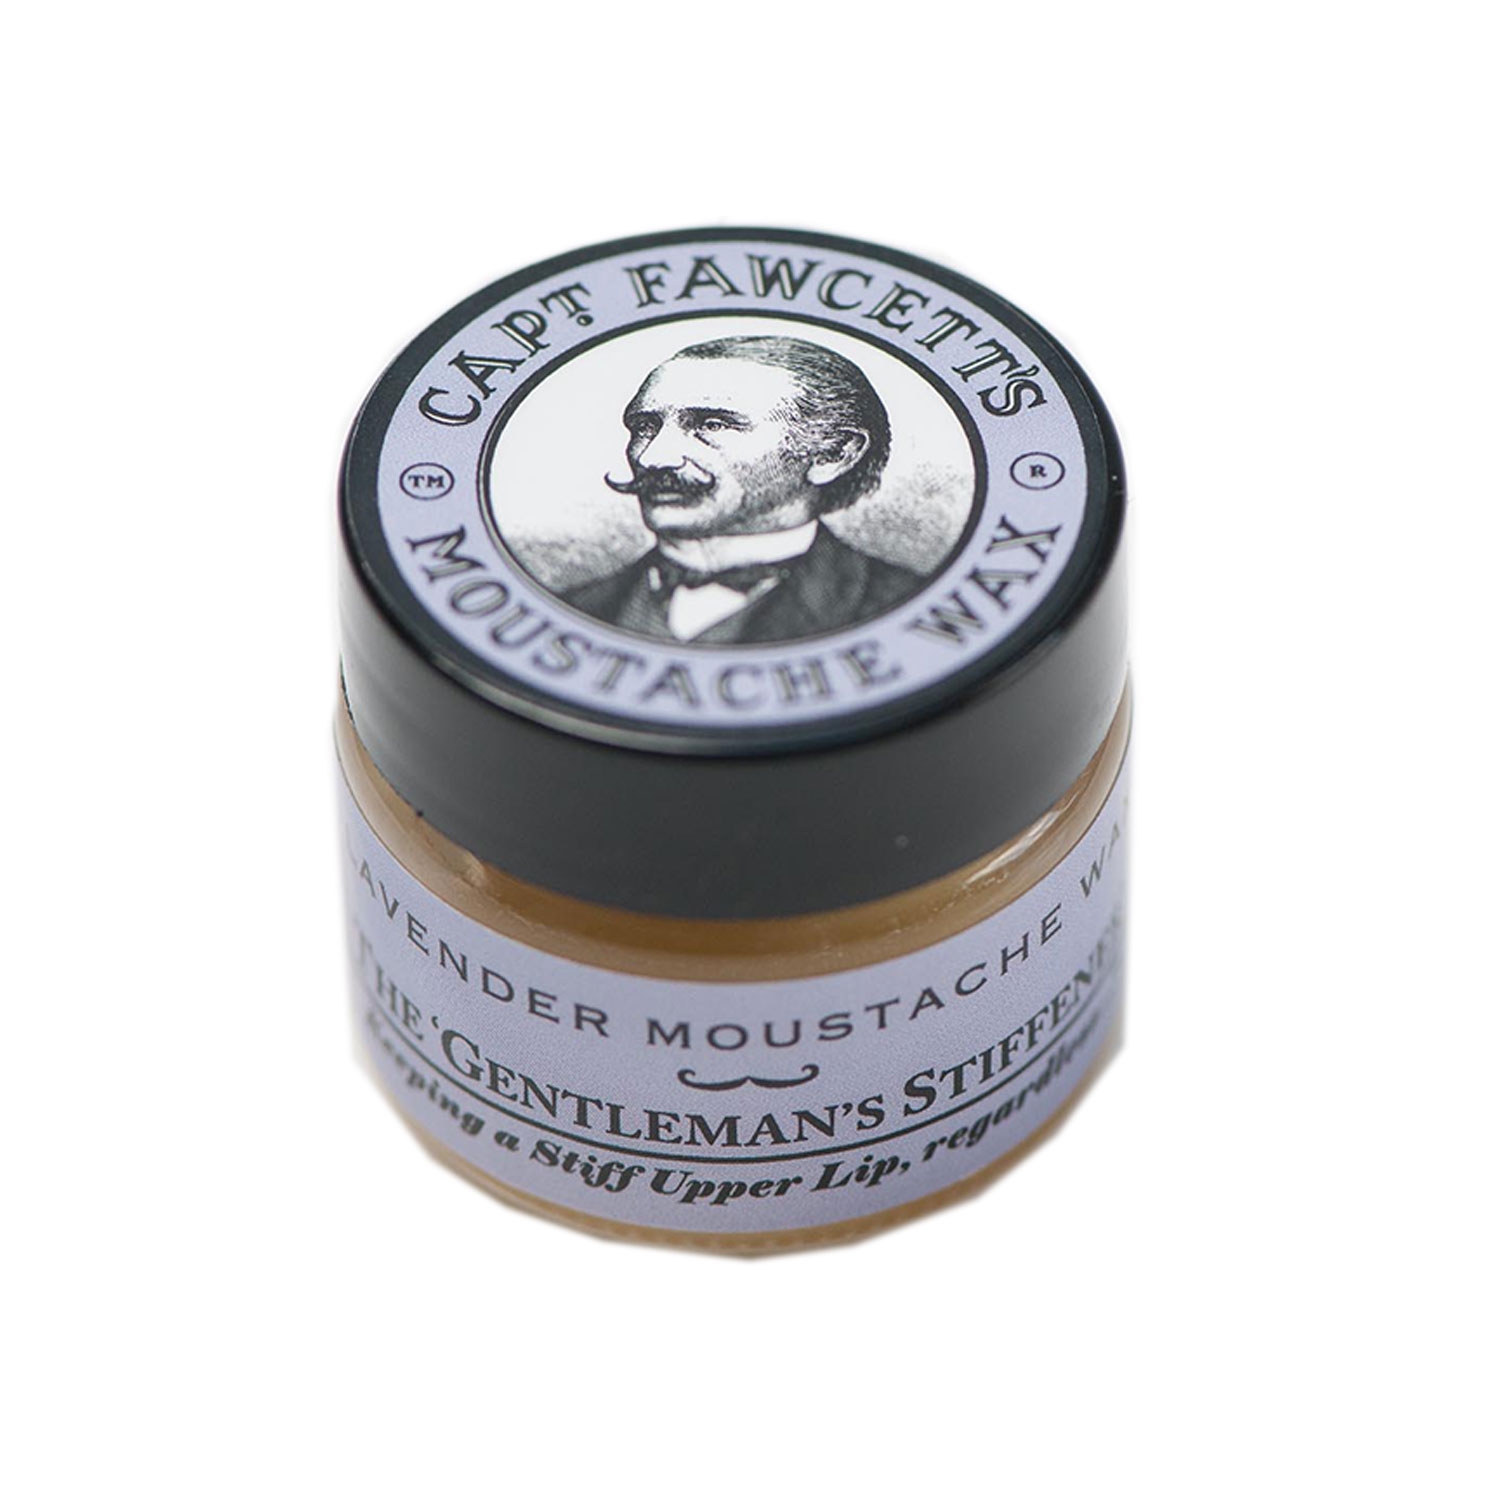 Produktbild von Capt. Fawcett Care - Lavender Moustache Wax